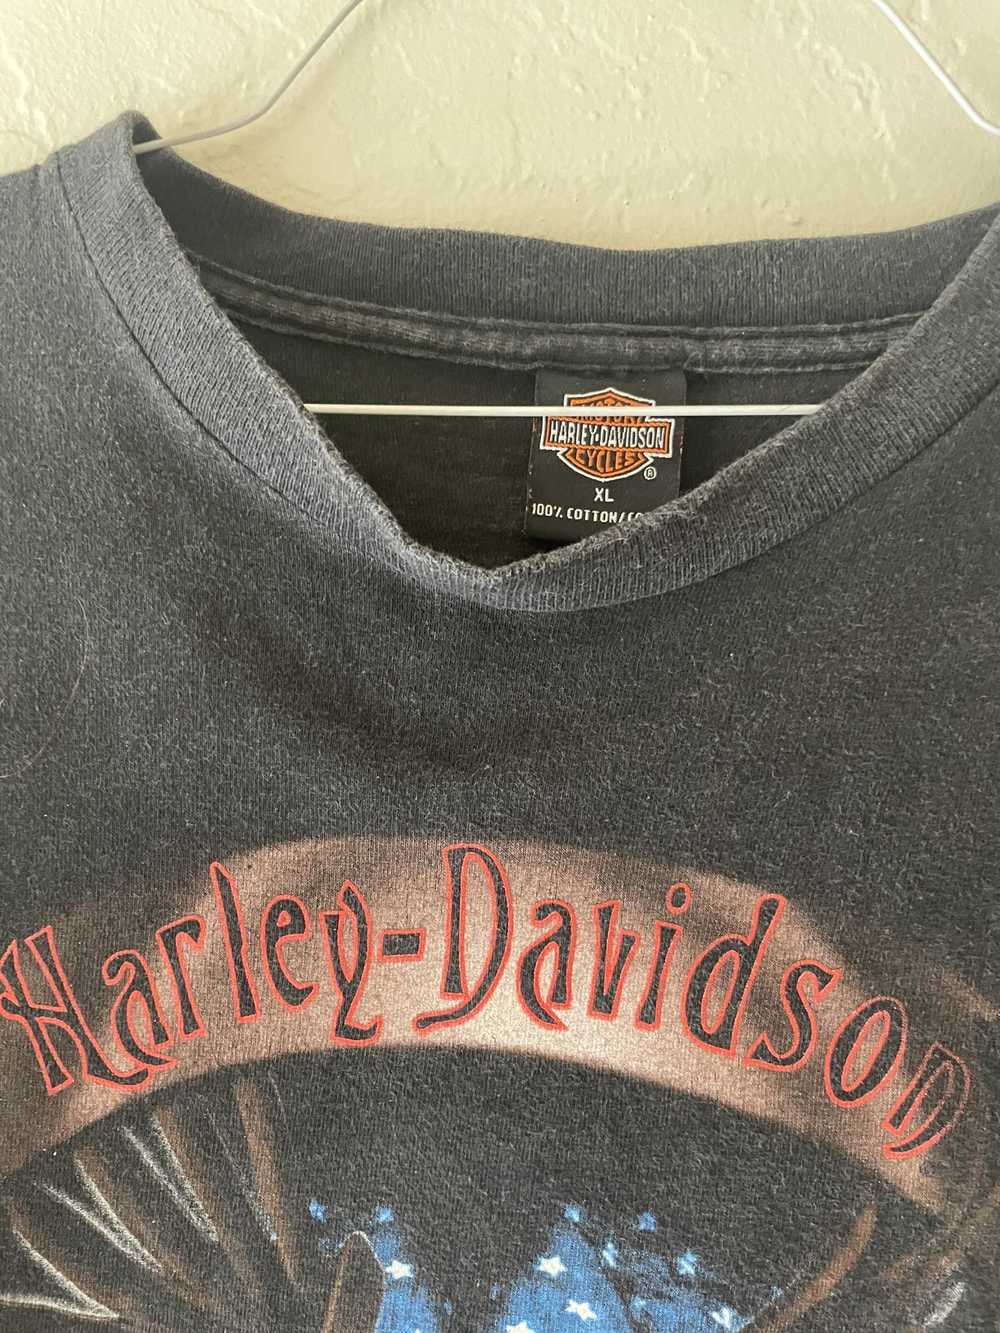 Harley Davidson Vintage Harley Davidson - image 2